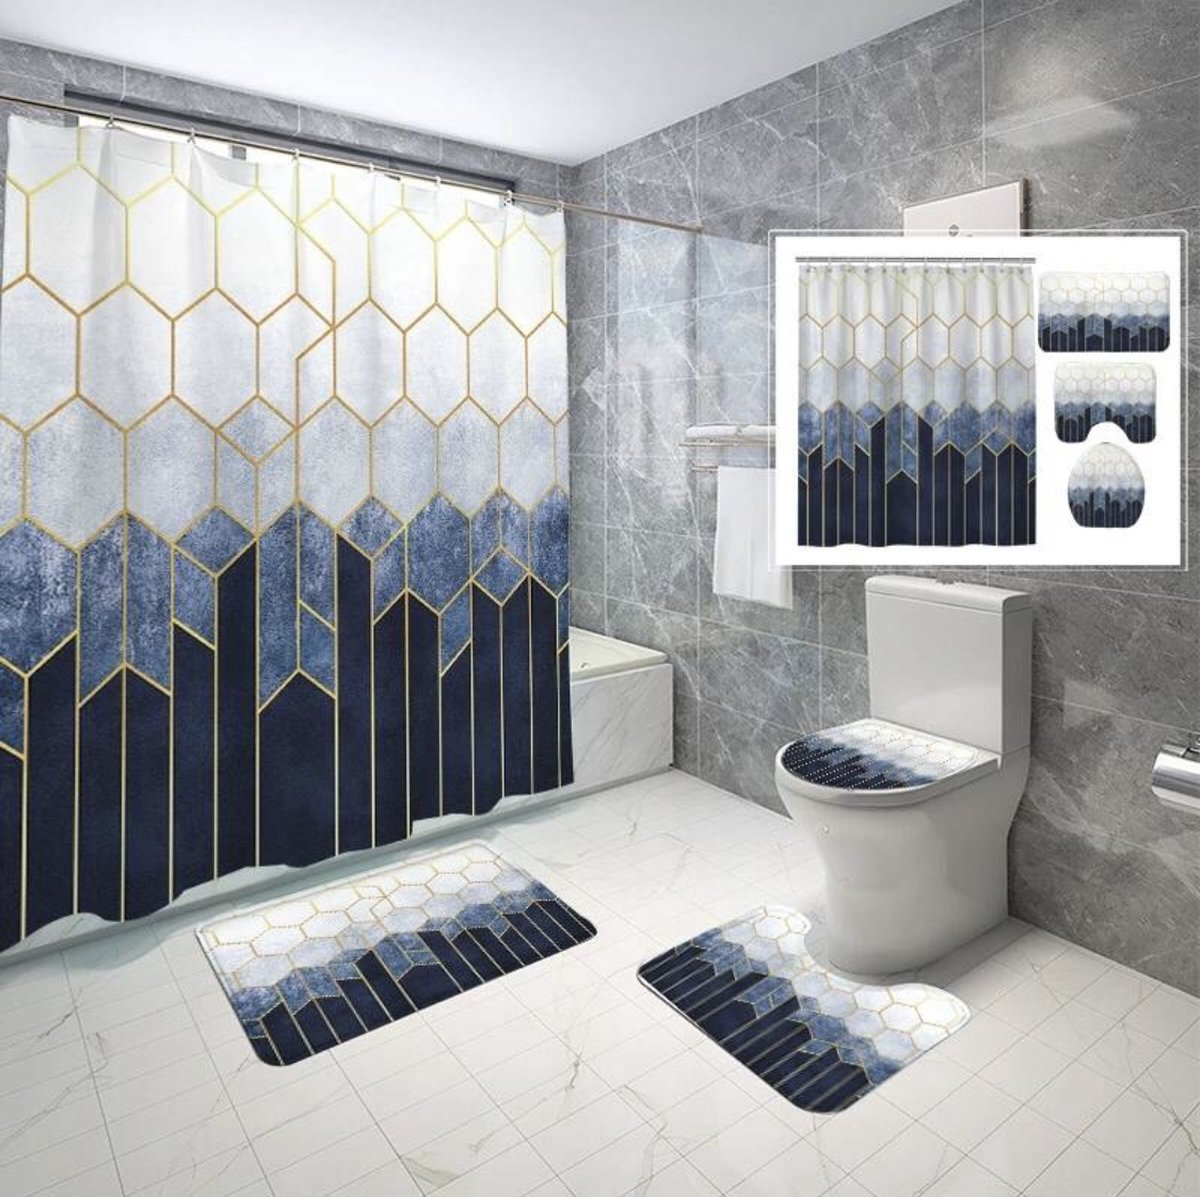 Luxe badkamer set- Set van 4 - Douchegordijn 180x180 - Badmatten set - Wc mat - Toiletbril hoes - Toiletmat - Badkamer mat 50x 80 - Wit met blauwe details - Antislip - Zacht - Kwaliteitsmat - Luxe design